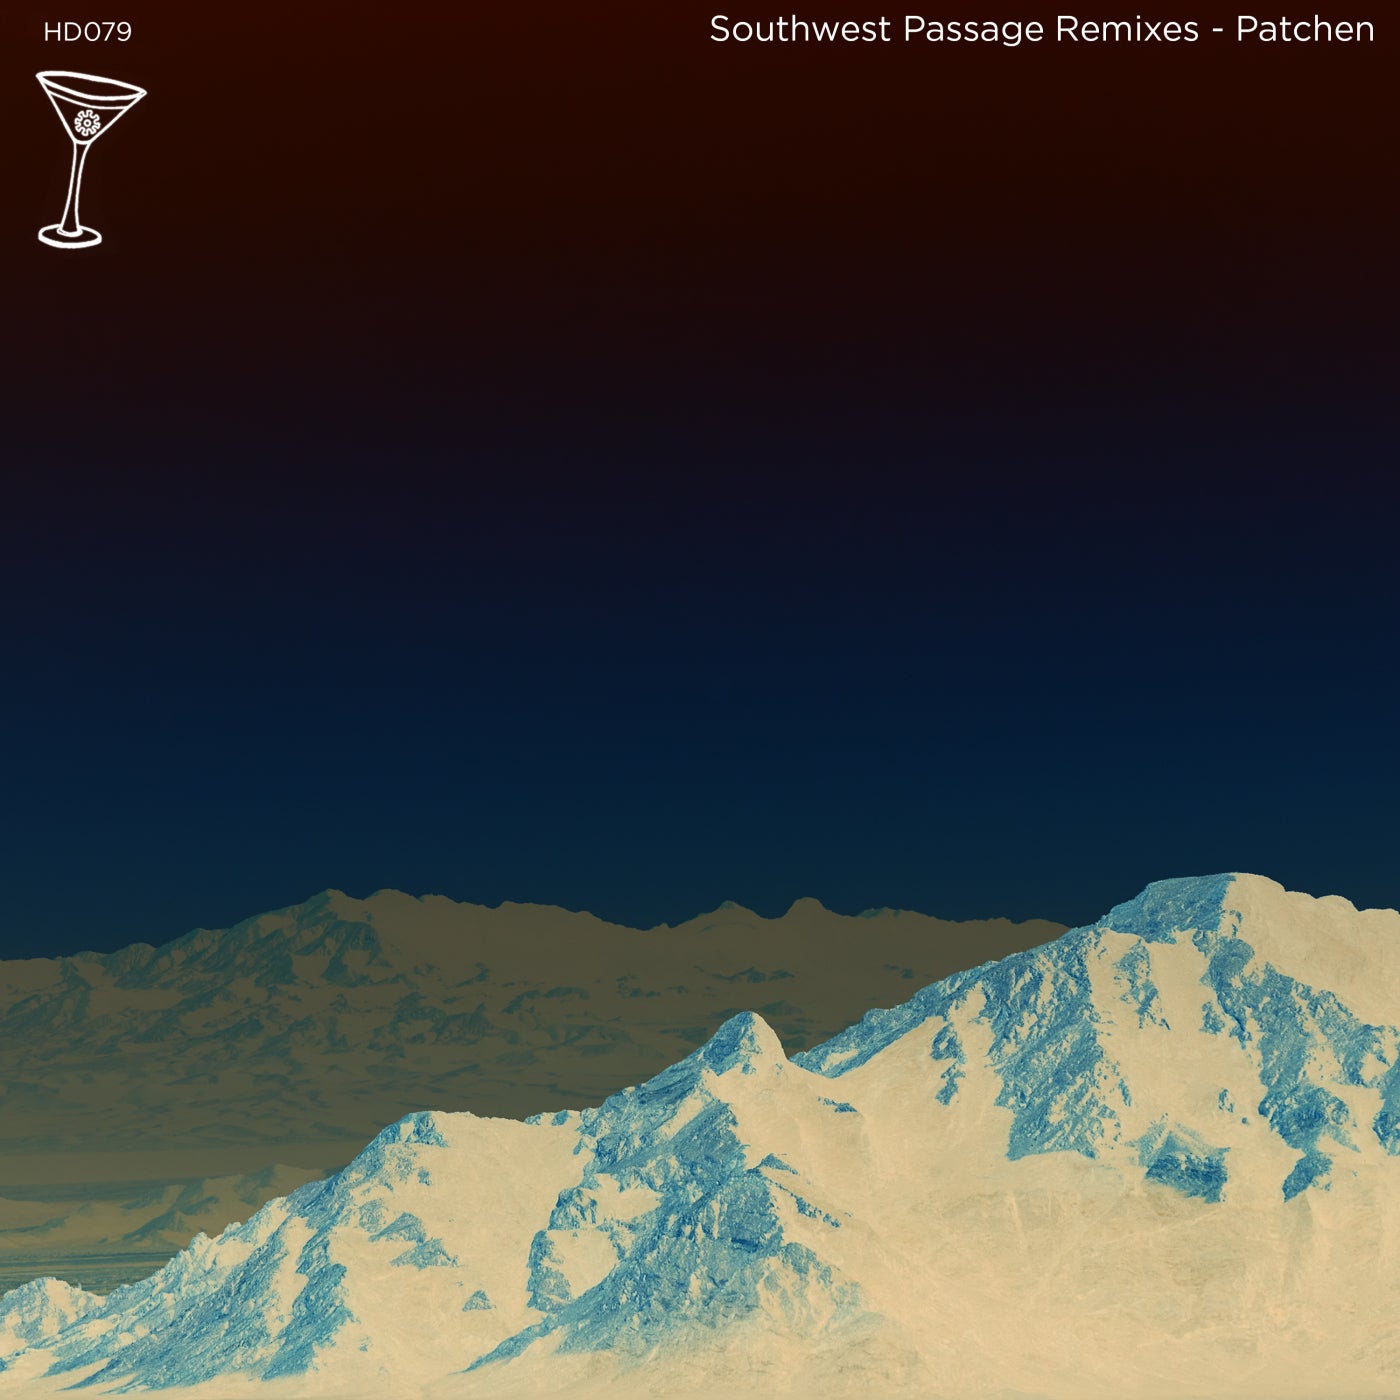 Southwest Passage Remixes